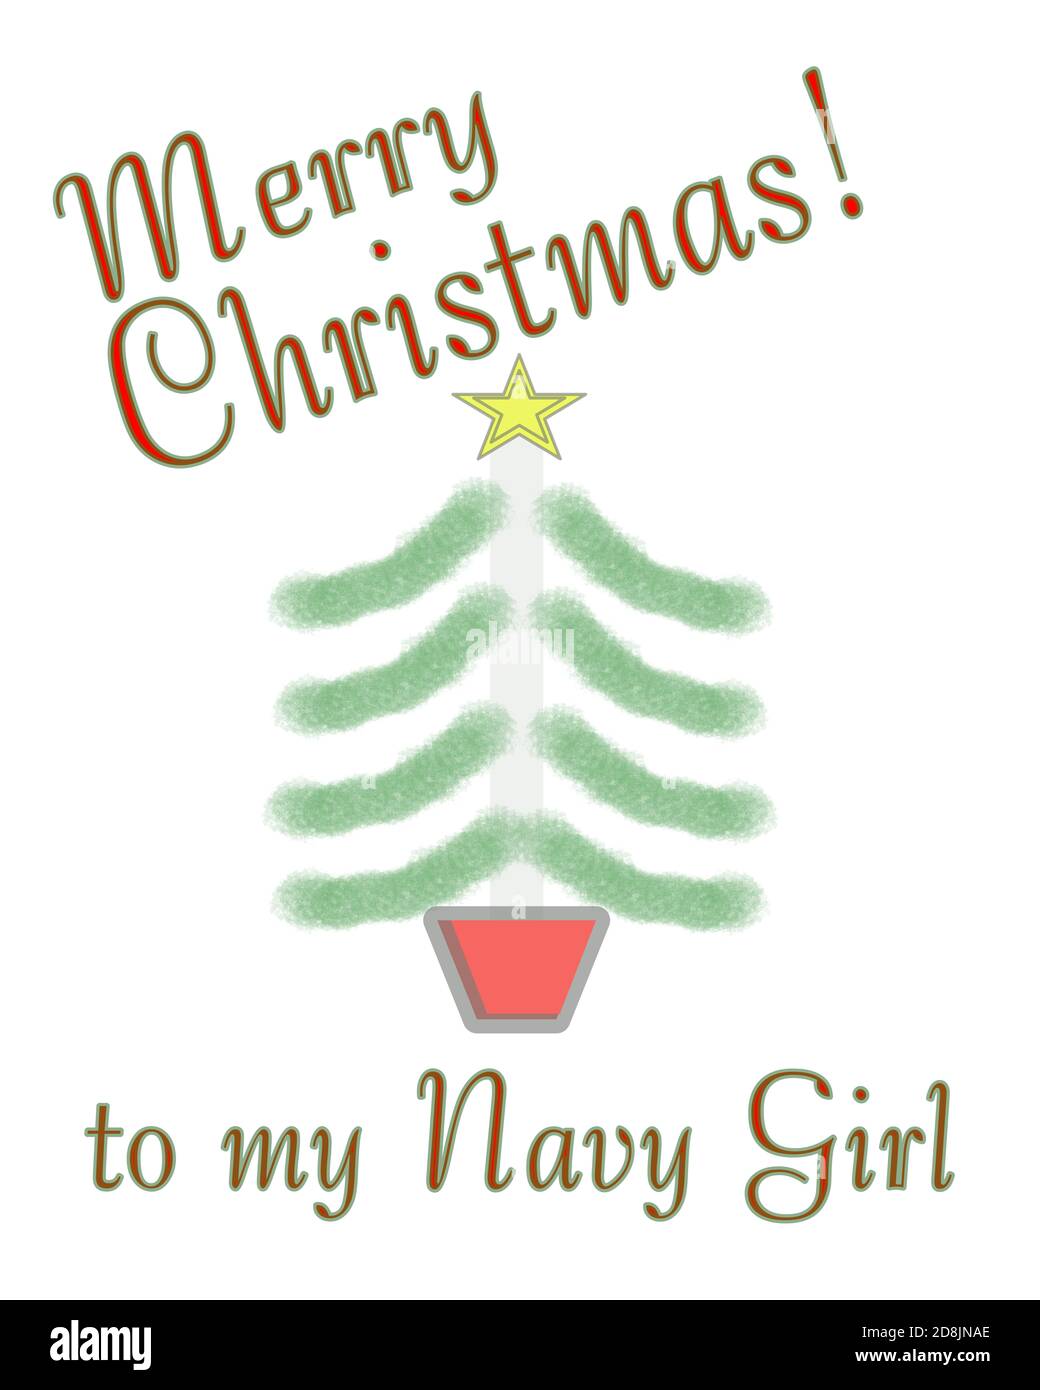 Buon Natale alla ragazza marina biglietto di auguri disegno su uno sfondo bianco con l'albero di Natale disegnato a mano. Foto Stock